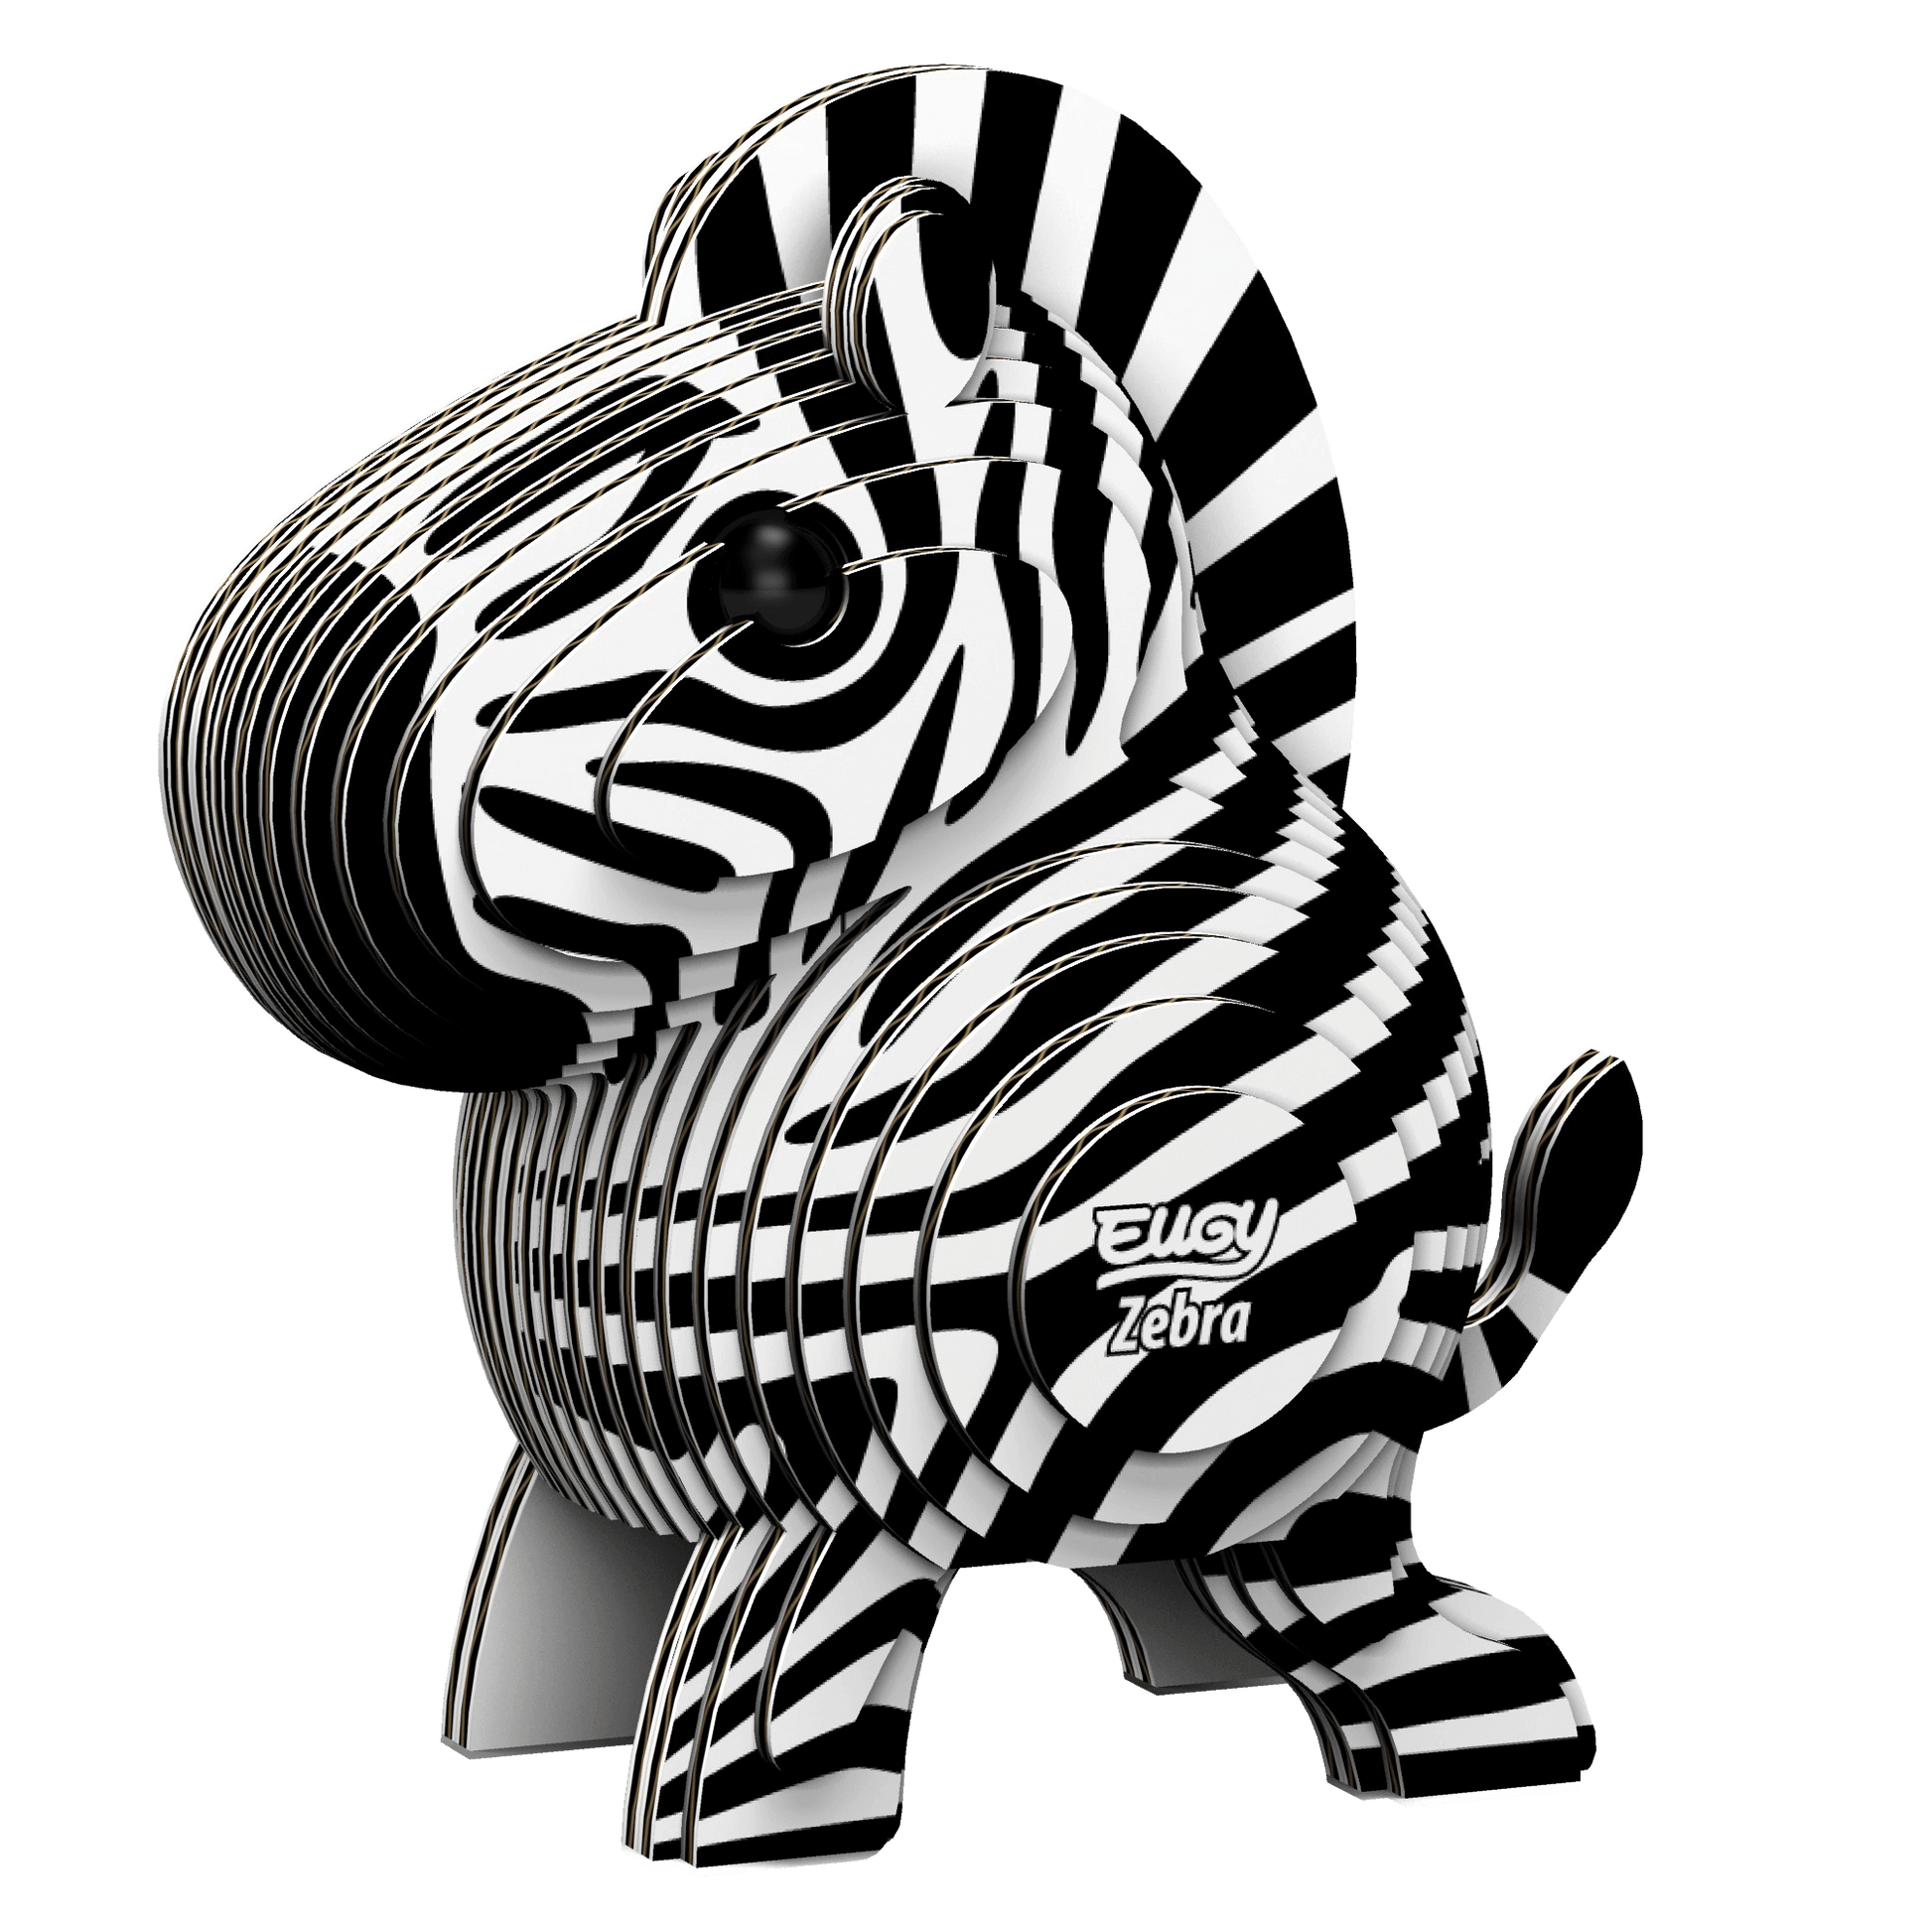 Zebra Eugy, Geotoys, eco-friendly Toys, Mountain Kids Toys